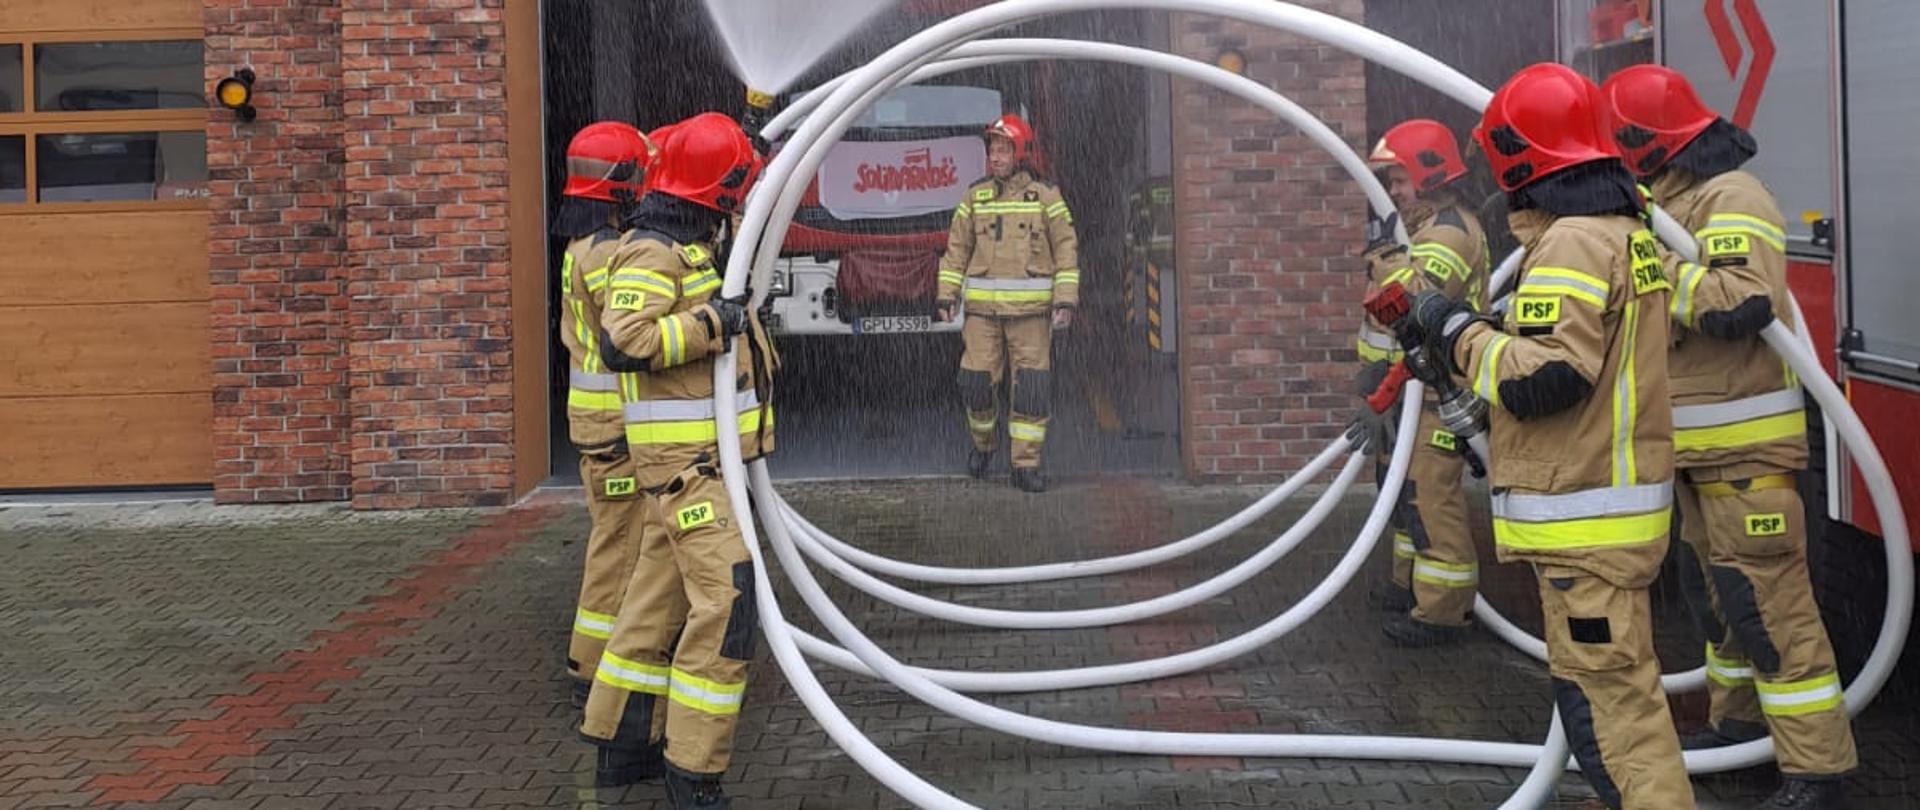 Na zdjęciu widać strażaków ubranych w ubrania specjalne, którzy trzymają wąż strażacki i polewają wodą swojego kolegę.